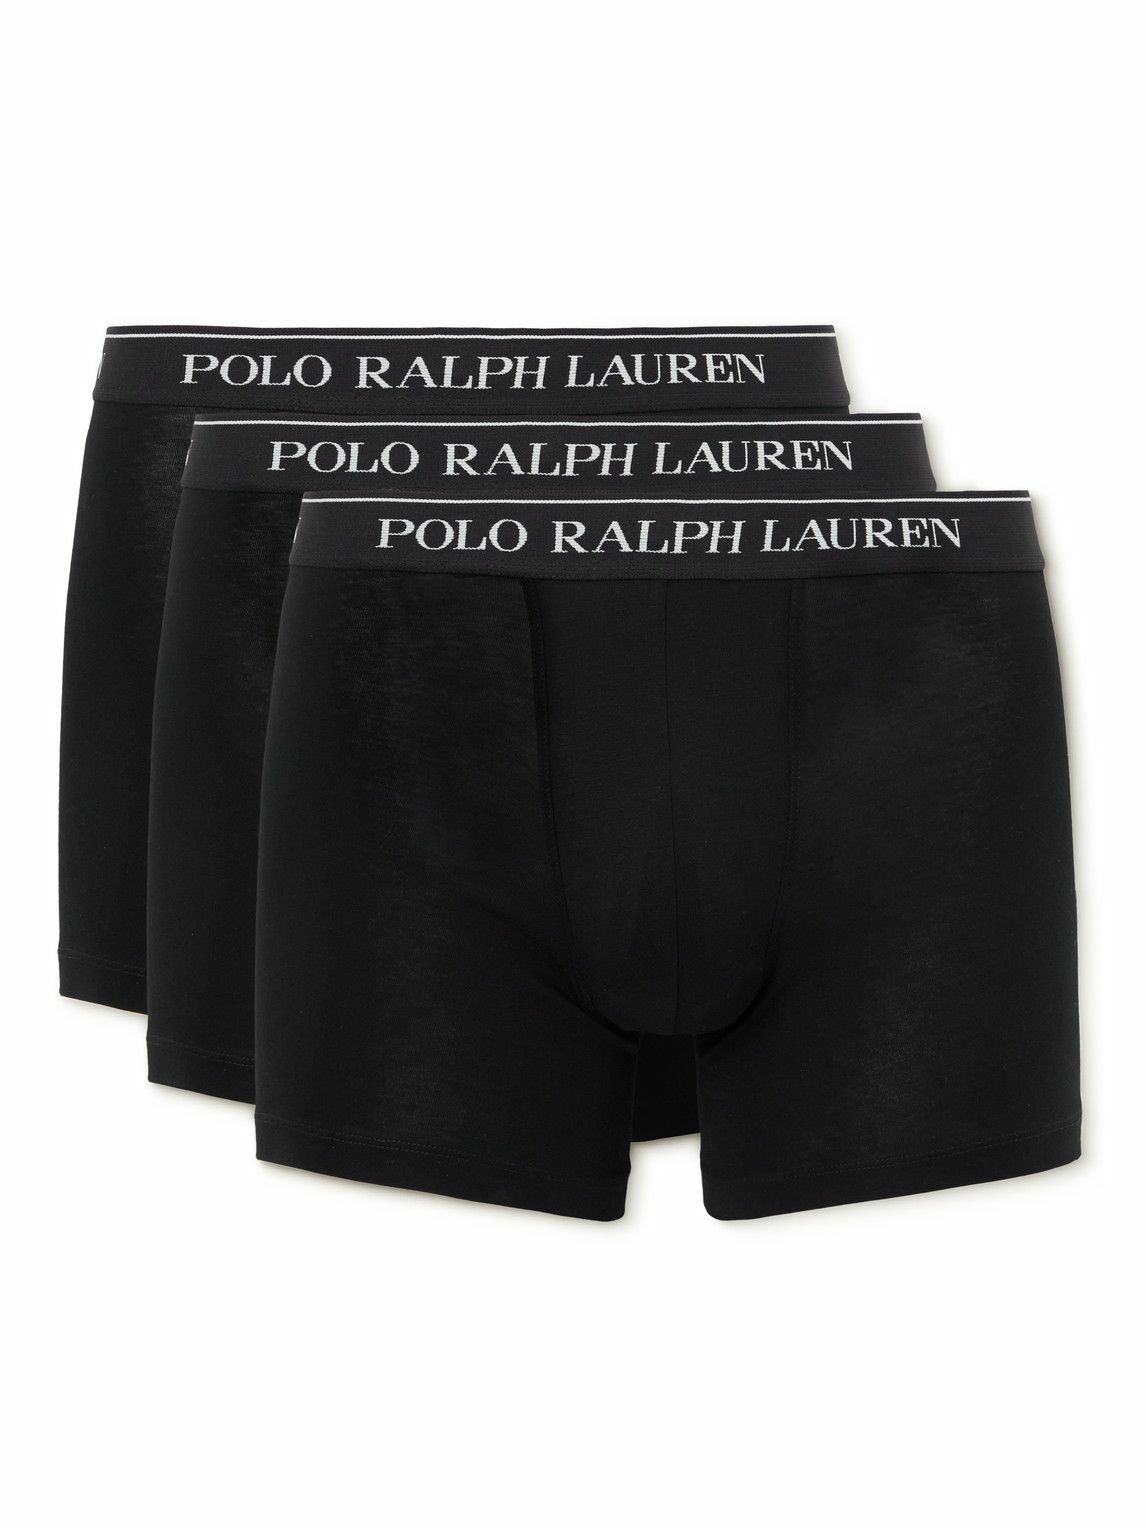 Polo Ralph Lauren Underwear Cotton Boxer 3-pack - Underpants 